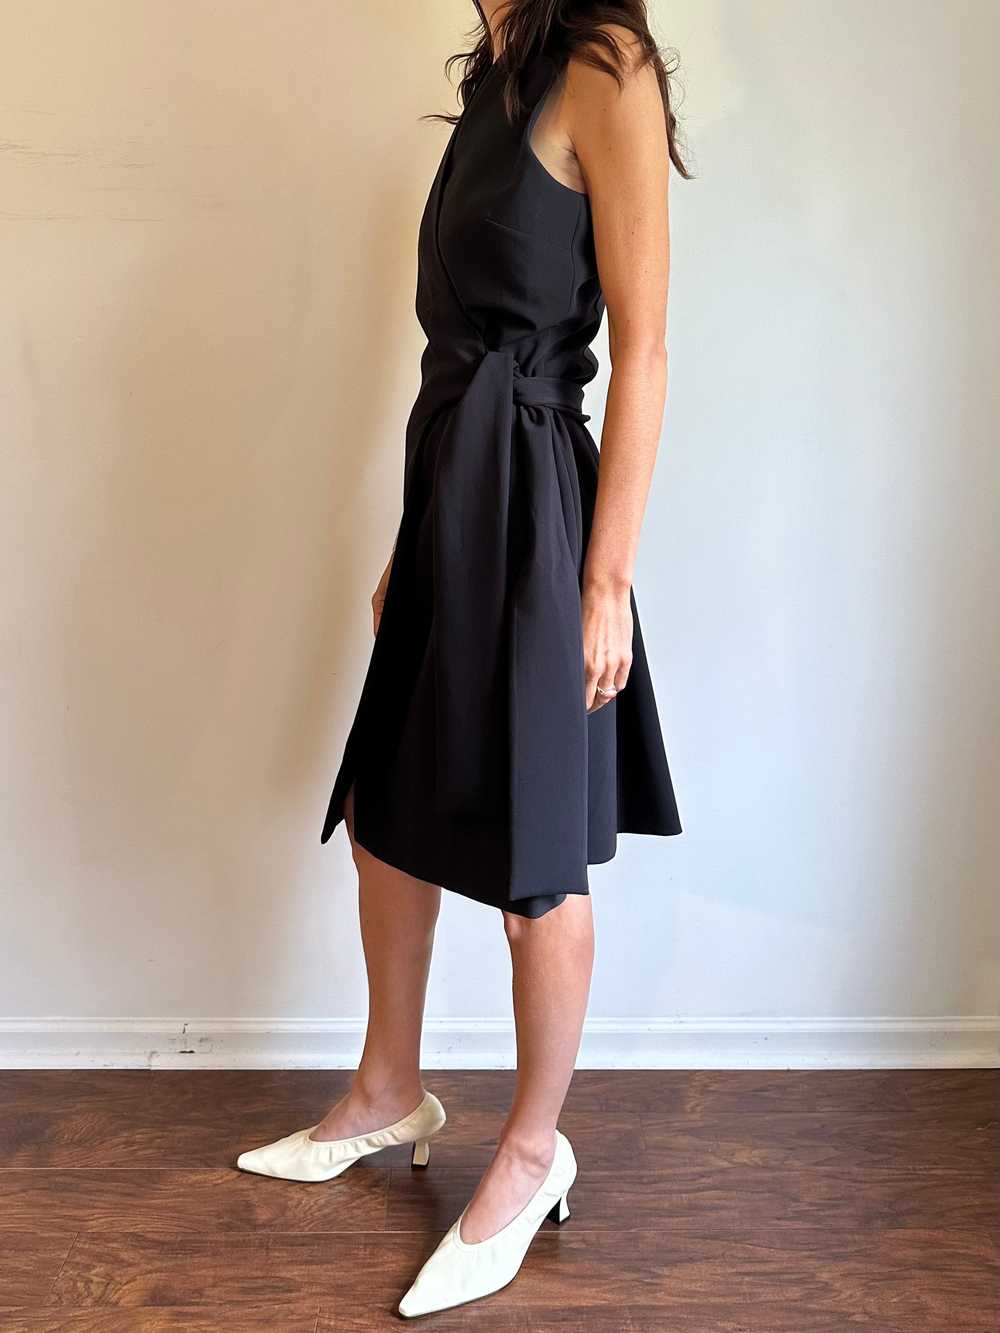 Donna Karen Black Wrap Halter Dress - image 5